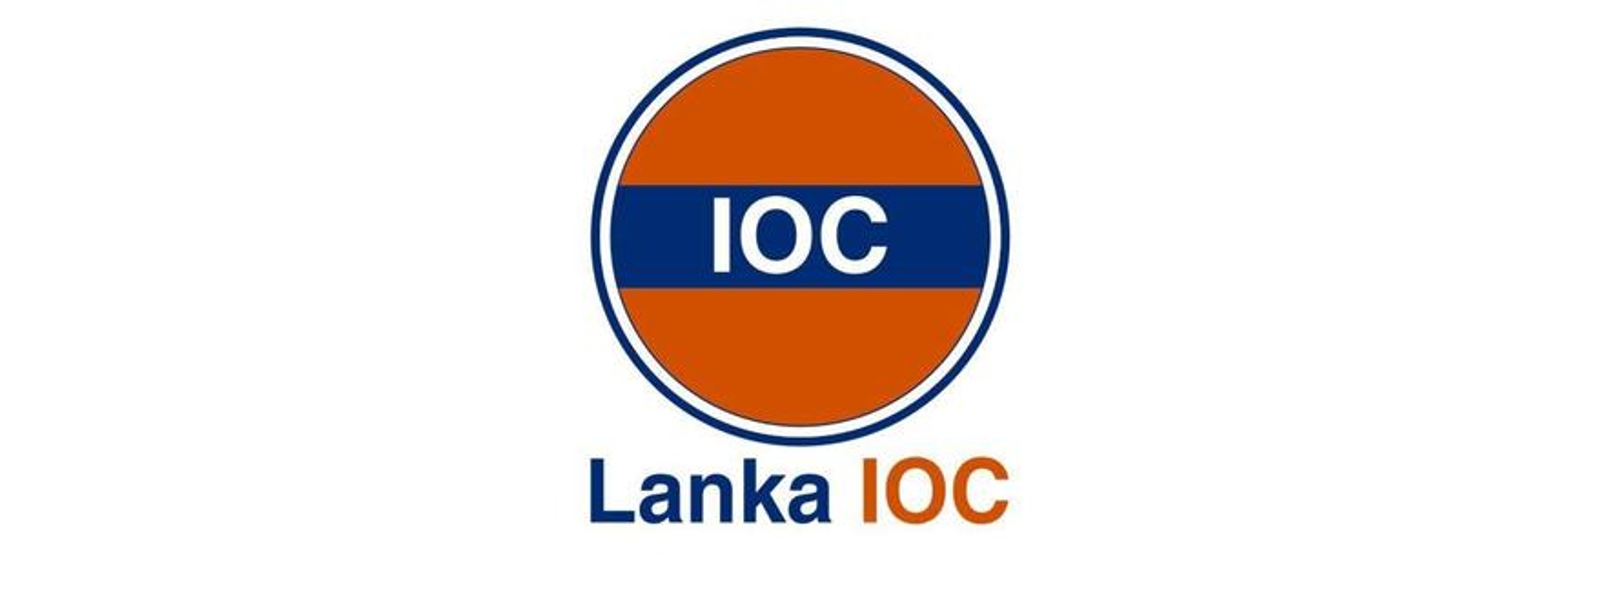 Lanka IOC suspends token system – MD